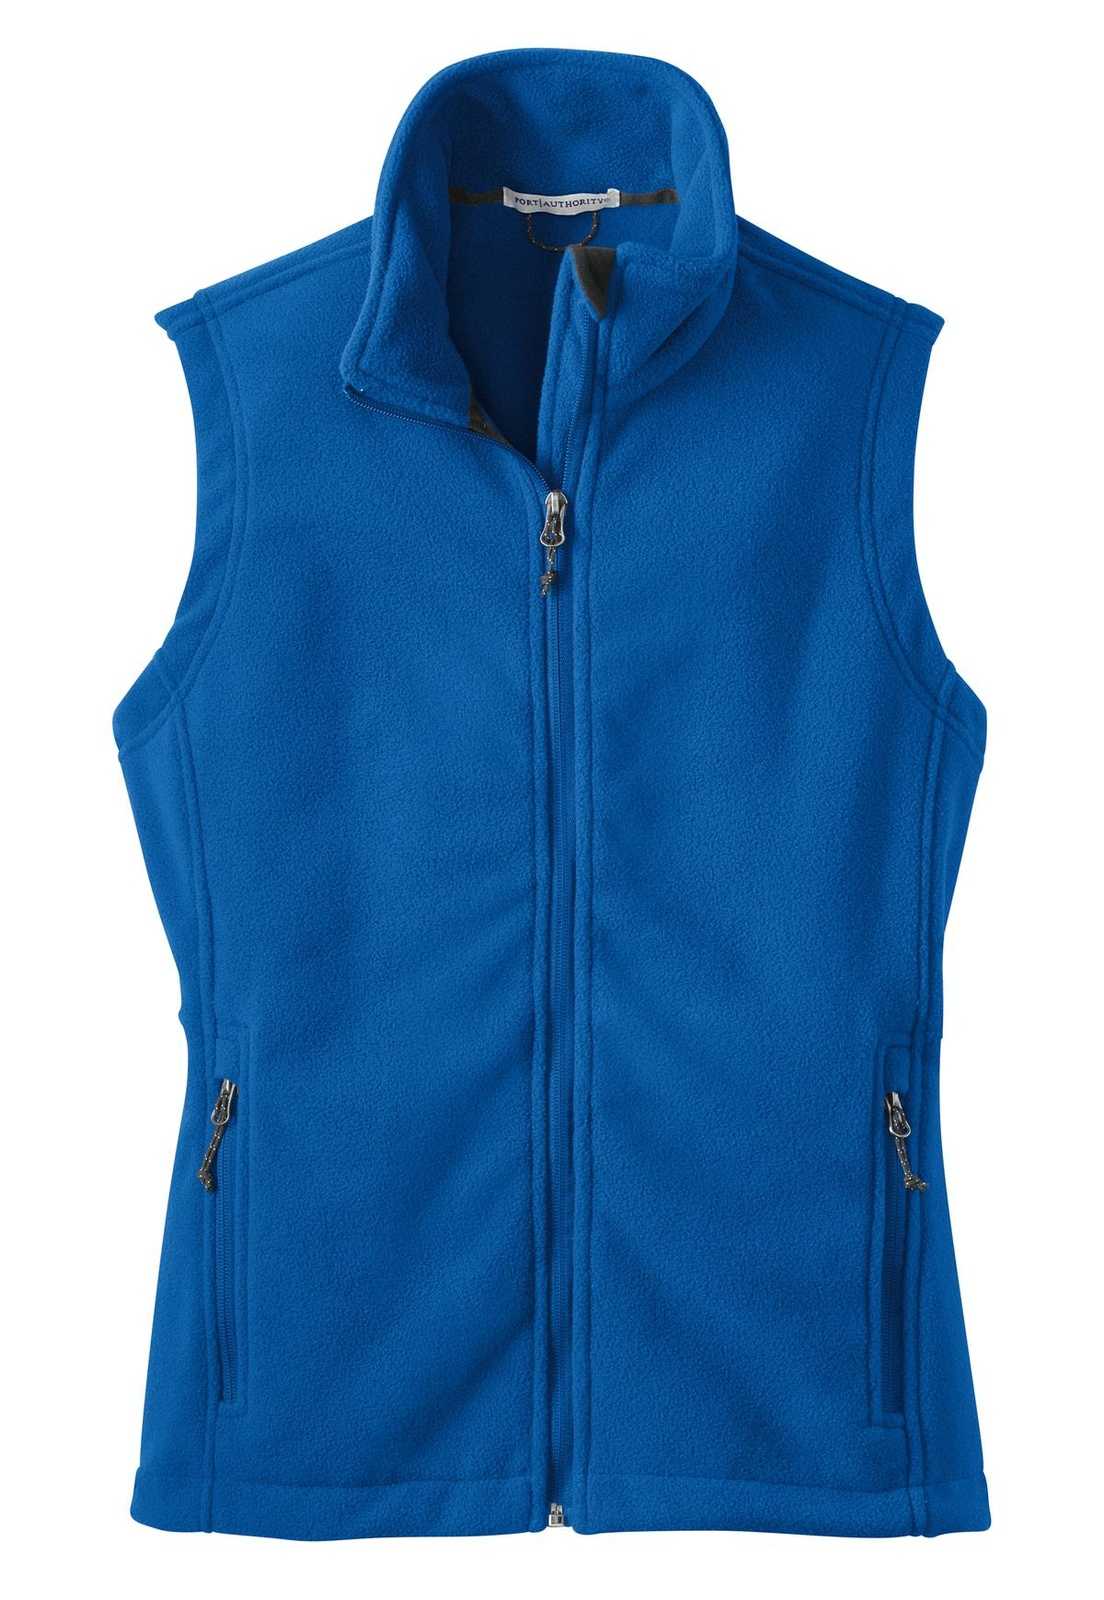 Port Authority L219 Ladies Value Fleece Vest - True Royal - HIT a Double - 5